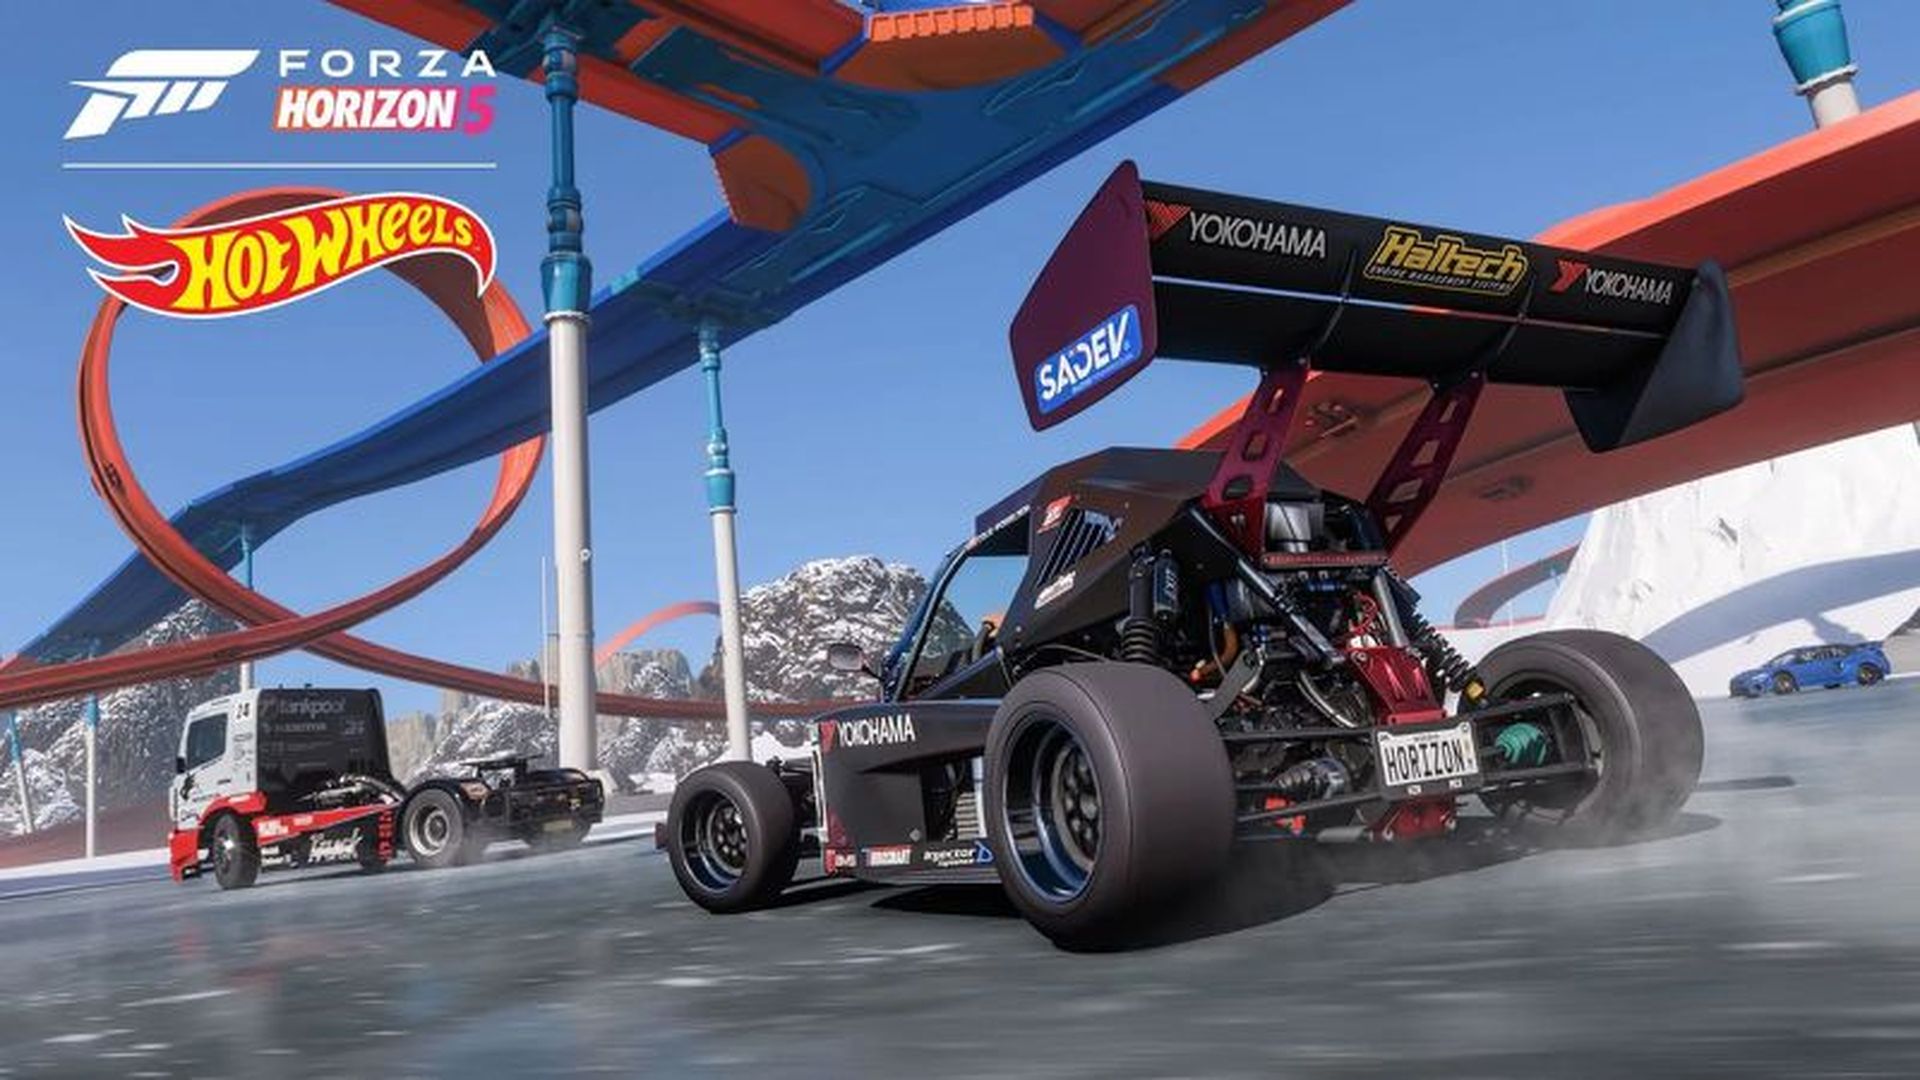 Уважаемые дамы и господа! Вышло дополнение Forza Horizon 5 Hot Wheels, в котором есть новый гоночный центр и набор инструментов для построения игровой трассы, а также множество литых под давлением артефактов и пластиковая инфраструктура трасс.